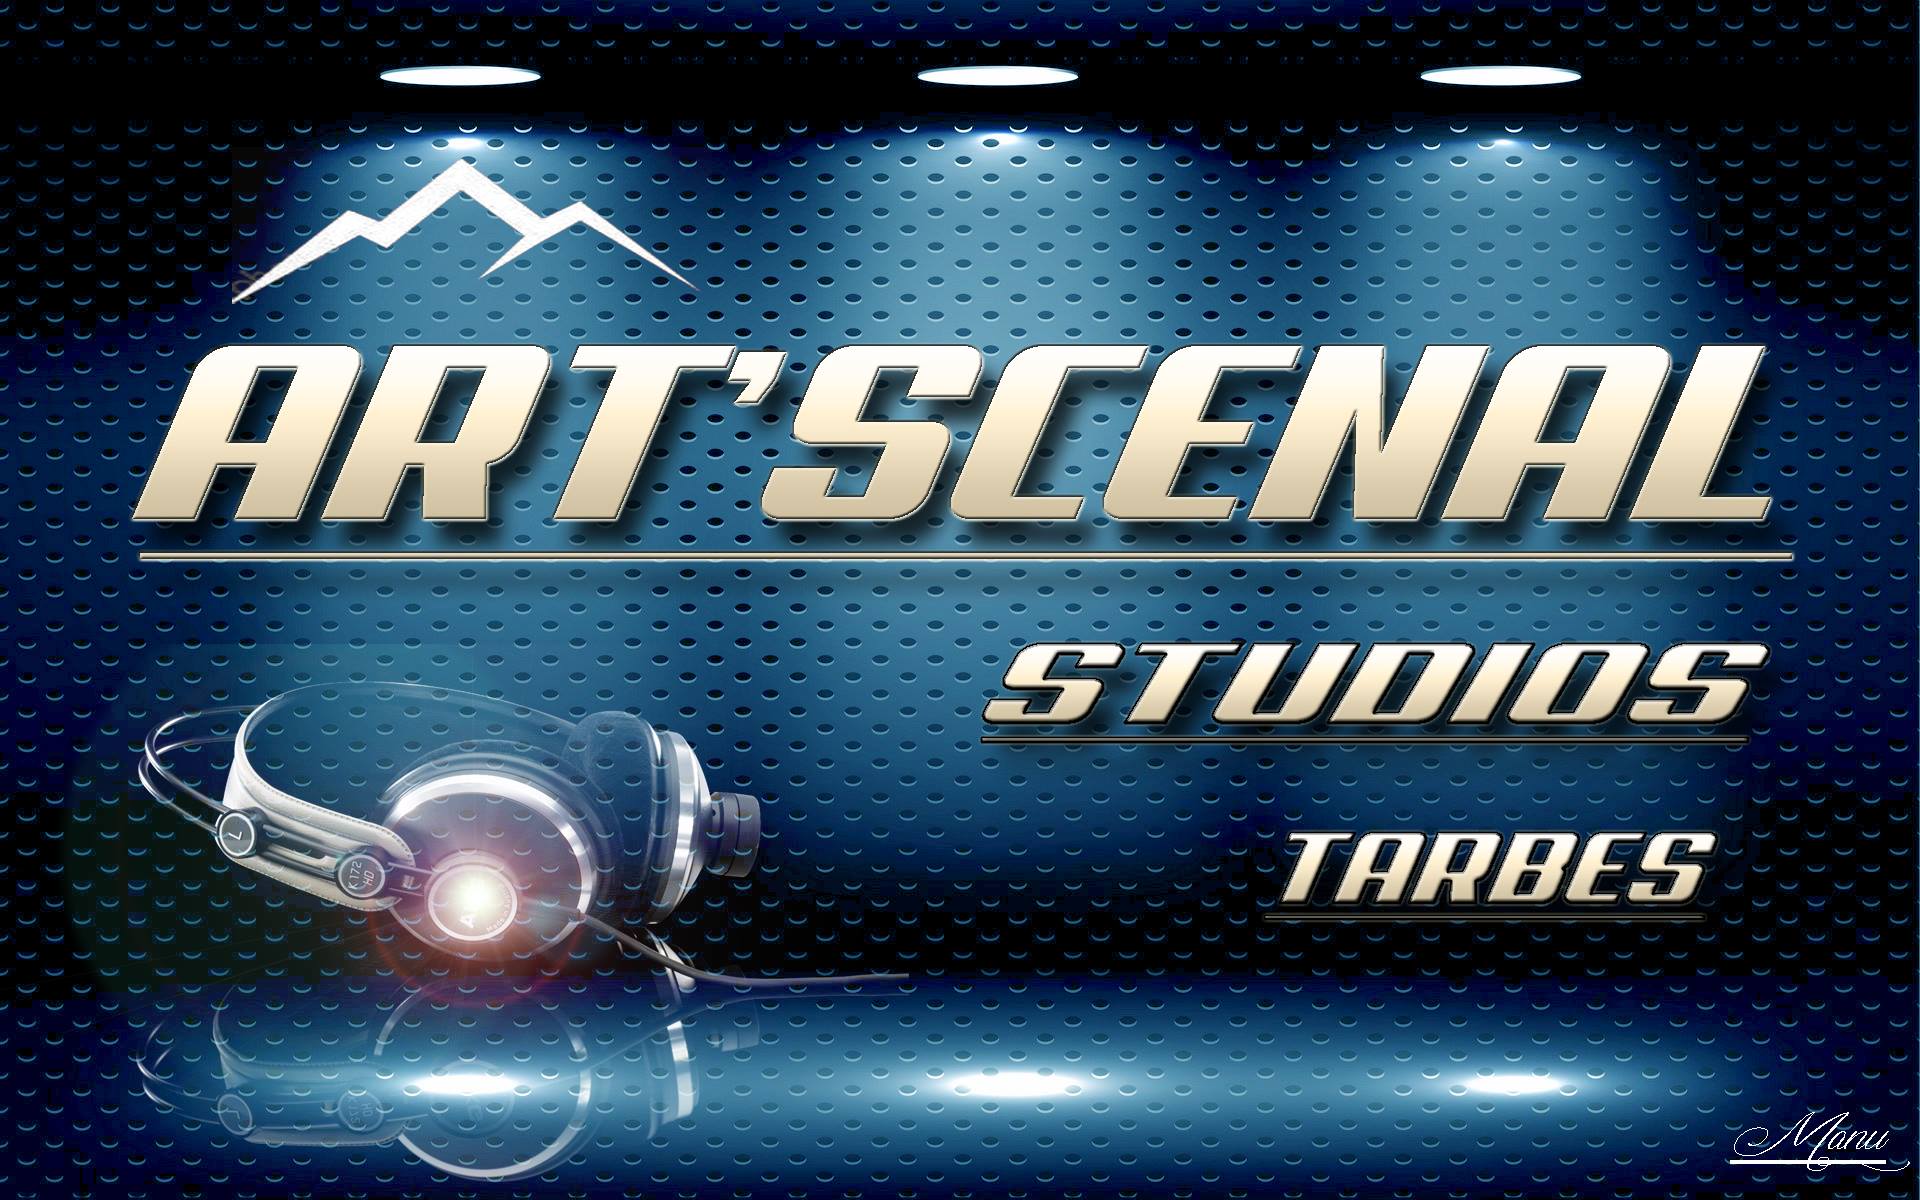 Art'Scenal Studios : Box de répétition et studio d'enregistrement à Tarbes 65